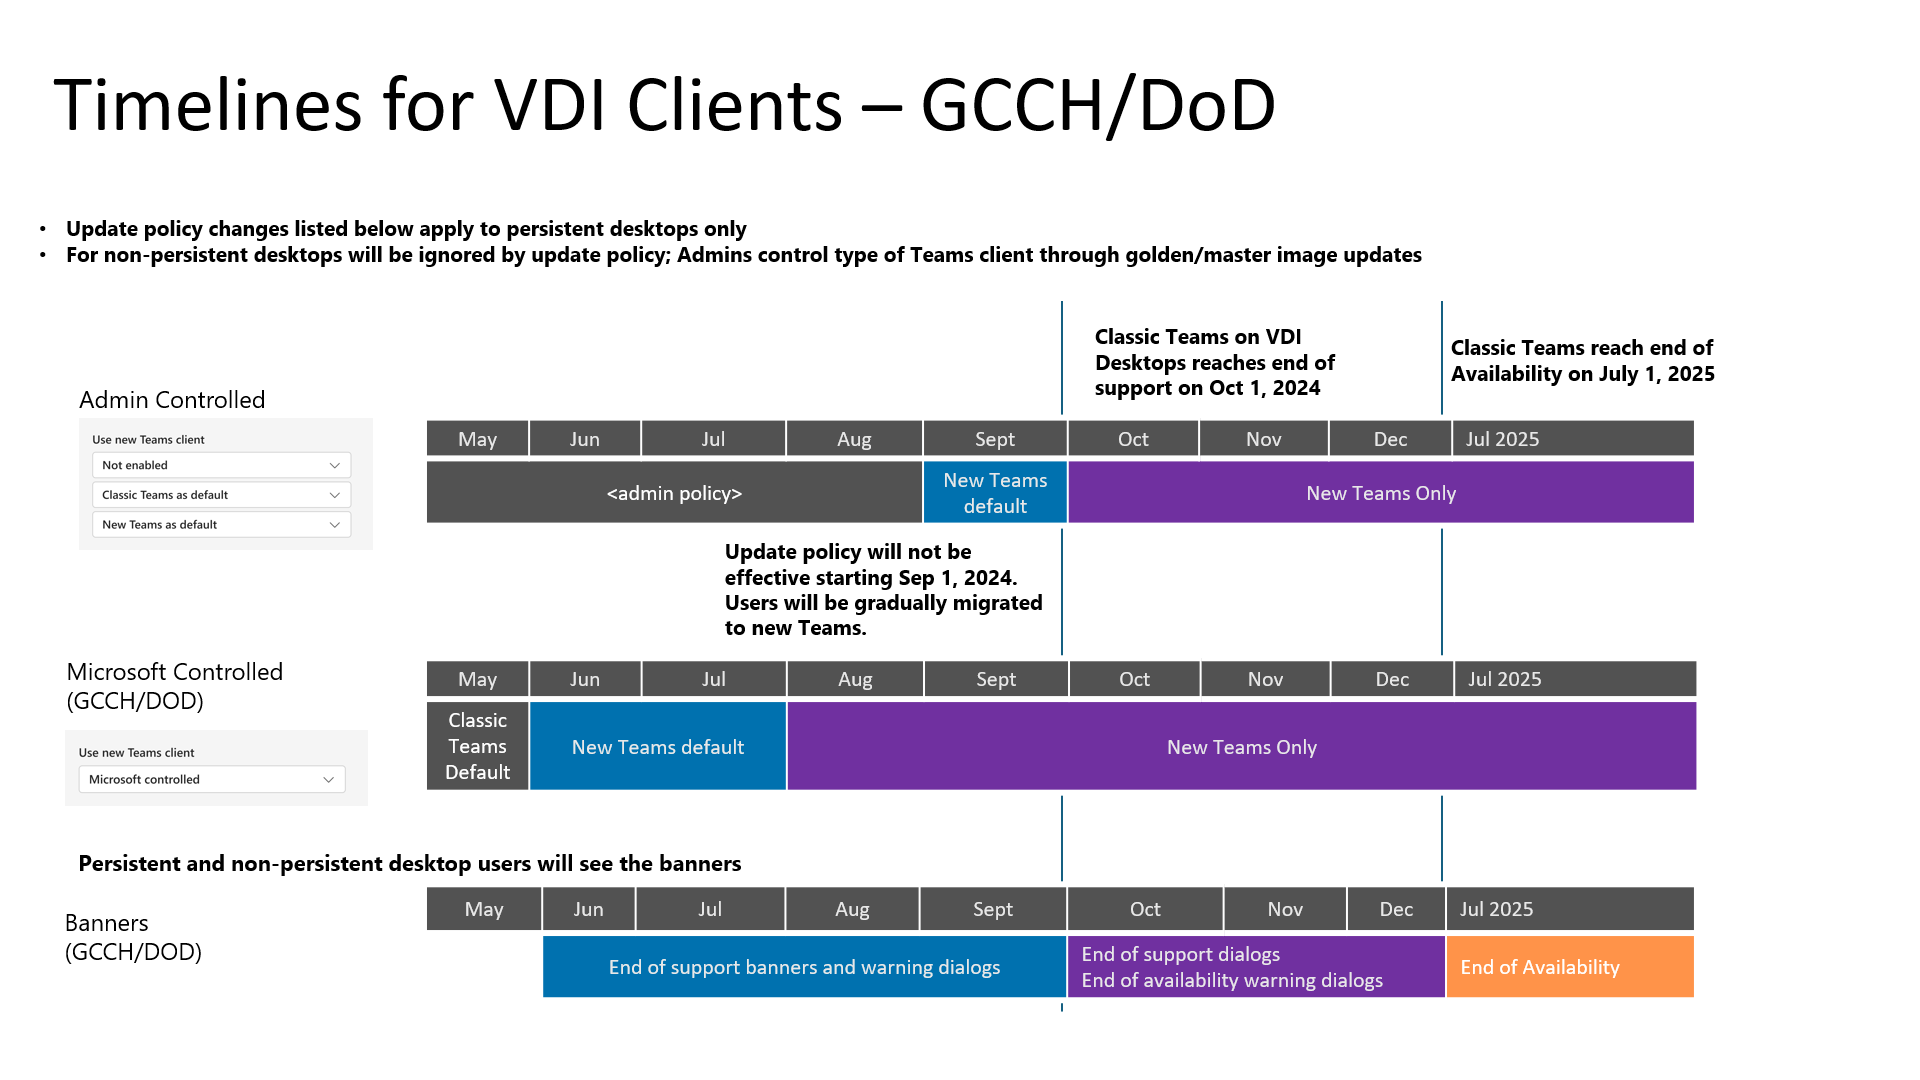 GCCH テナントと DoD テナントに固有の、クラシック Teams から新しい Teams for VDI へのタイムラインを示すグラフ。